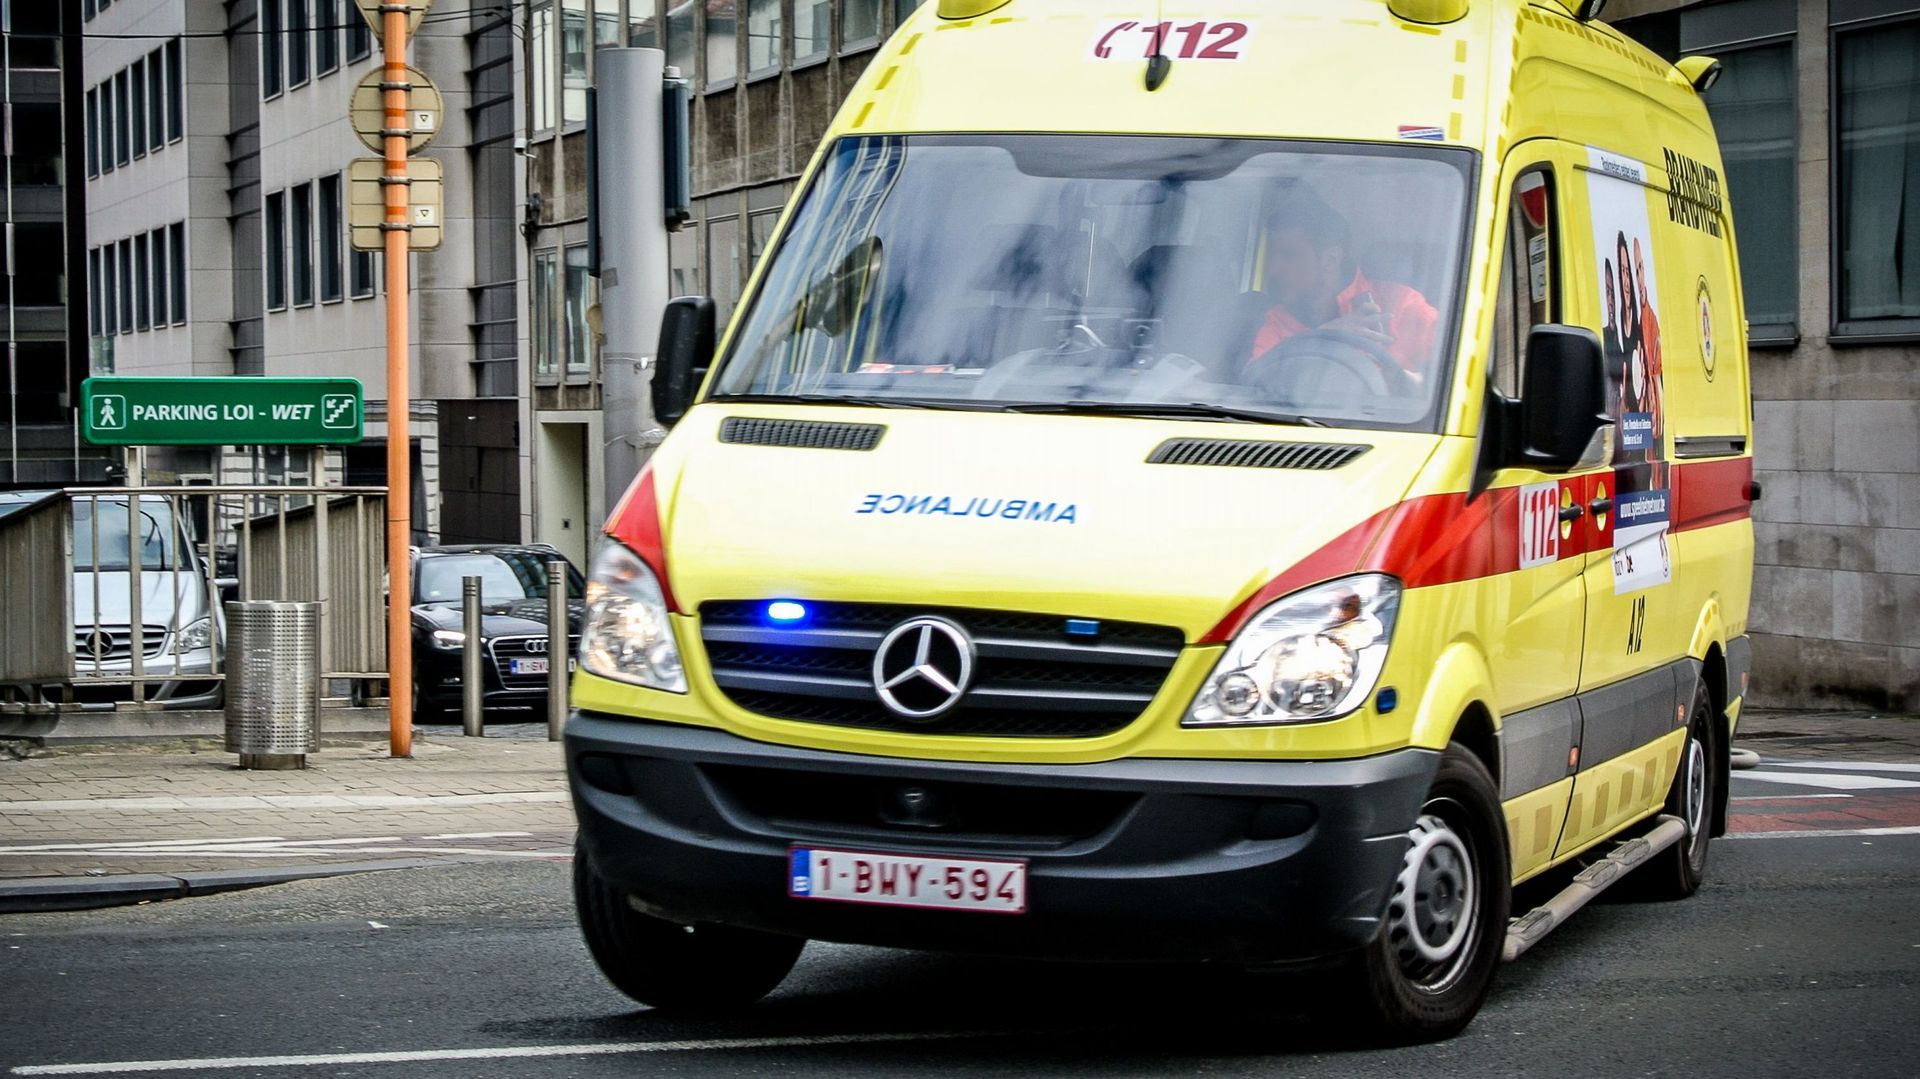 Les sirènes des véhicules de secours sont la troisième source de nuisances sonores pour les bruxellois